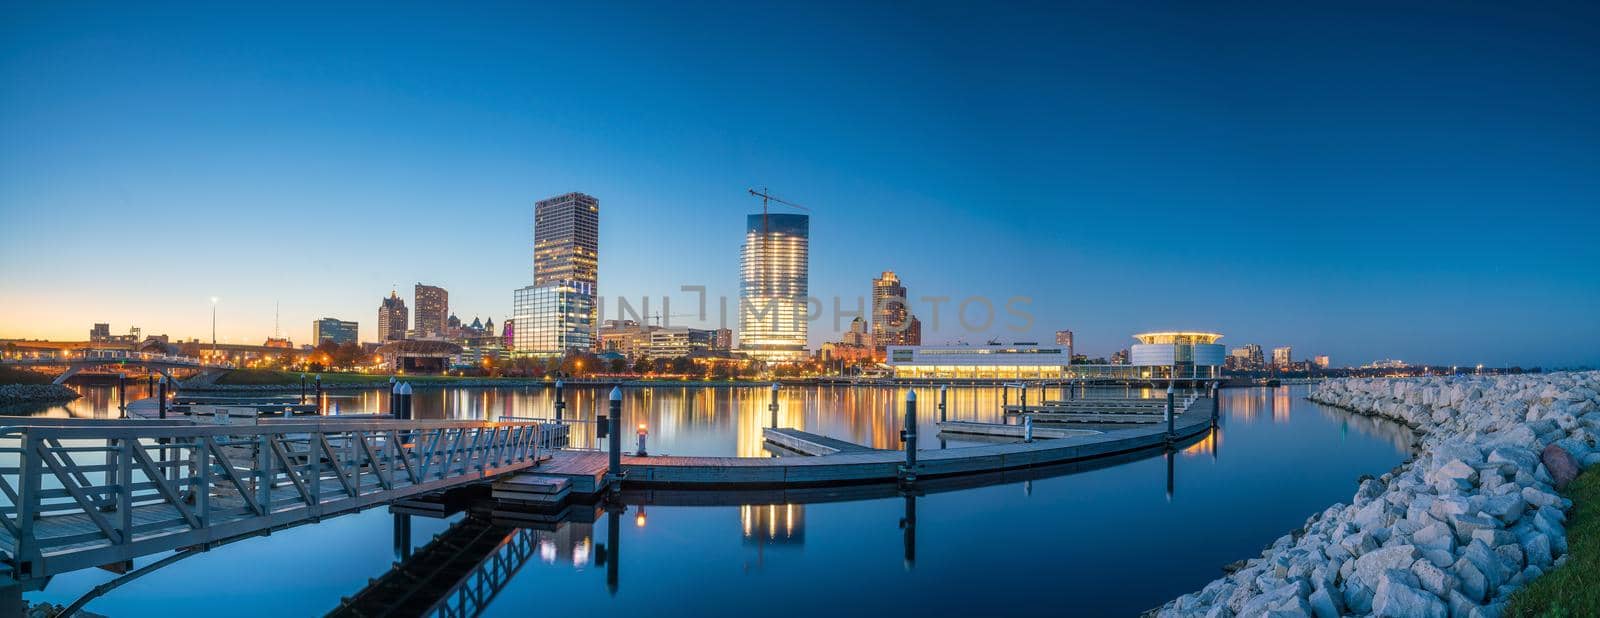 Milwaukee skyline by f11photo